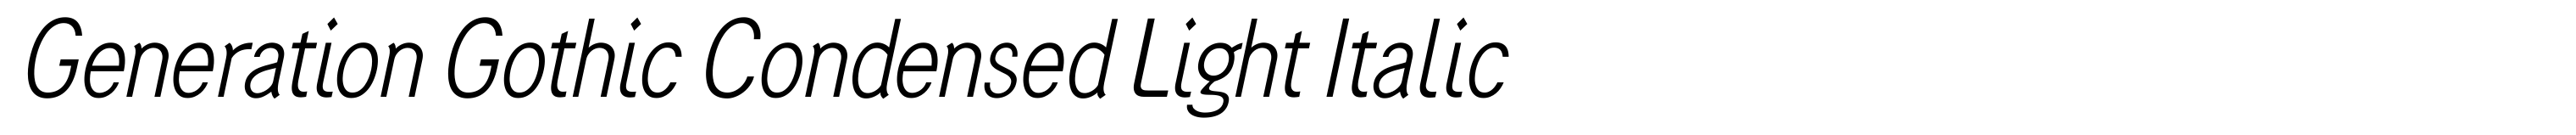 Generation Gothic Condensed Light Italic